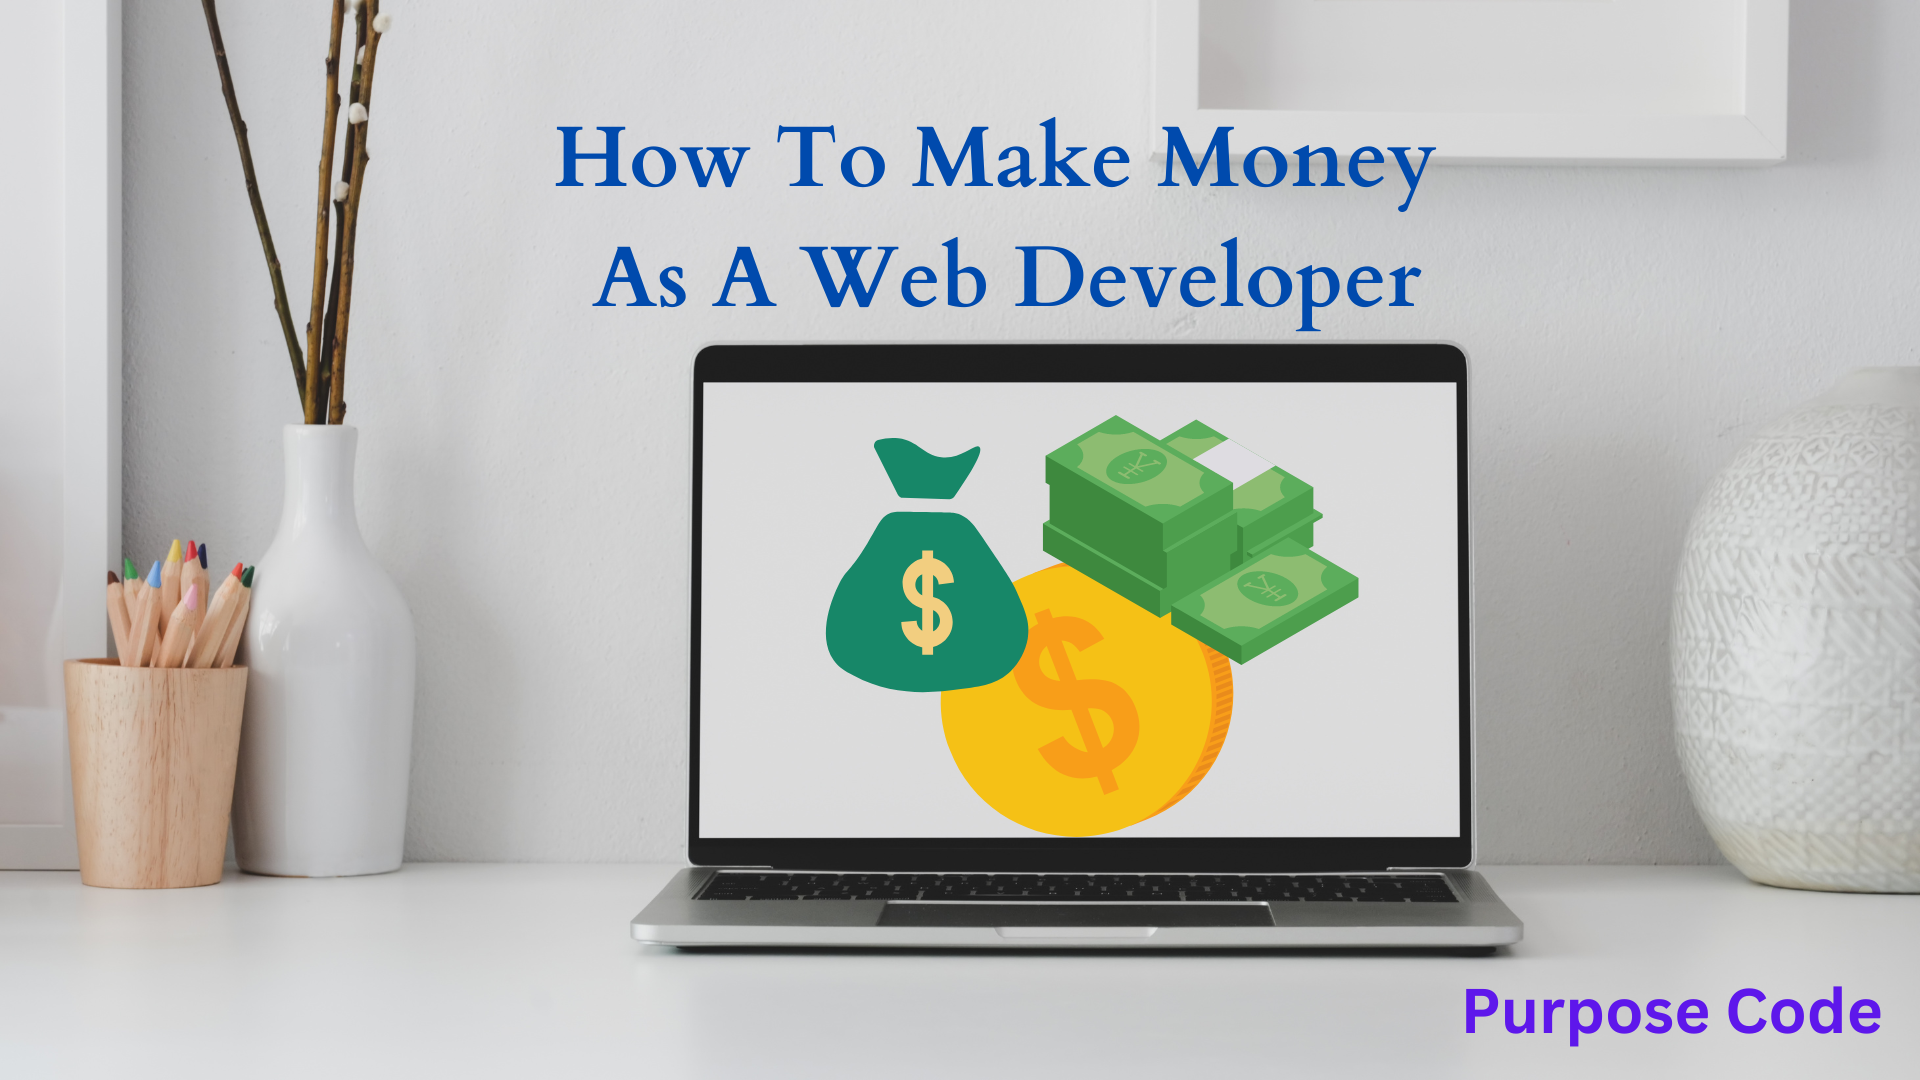 I'm a web developer, so how can I make money?